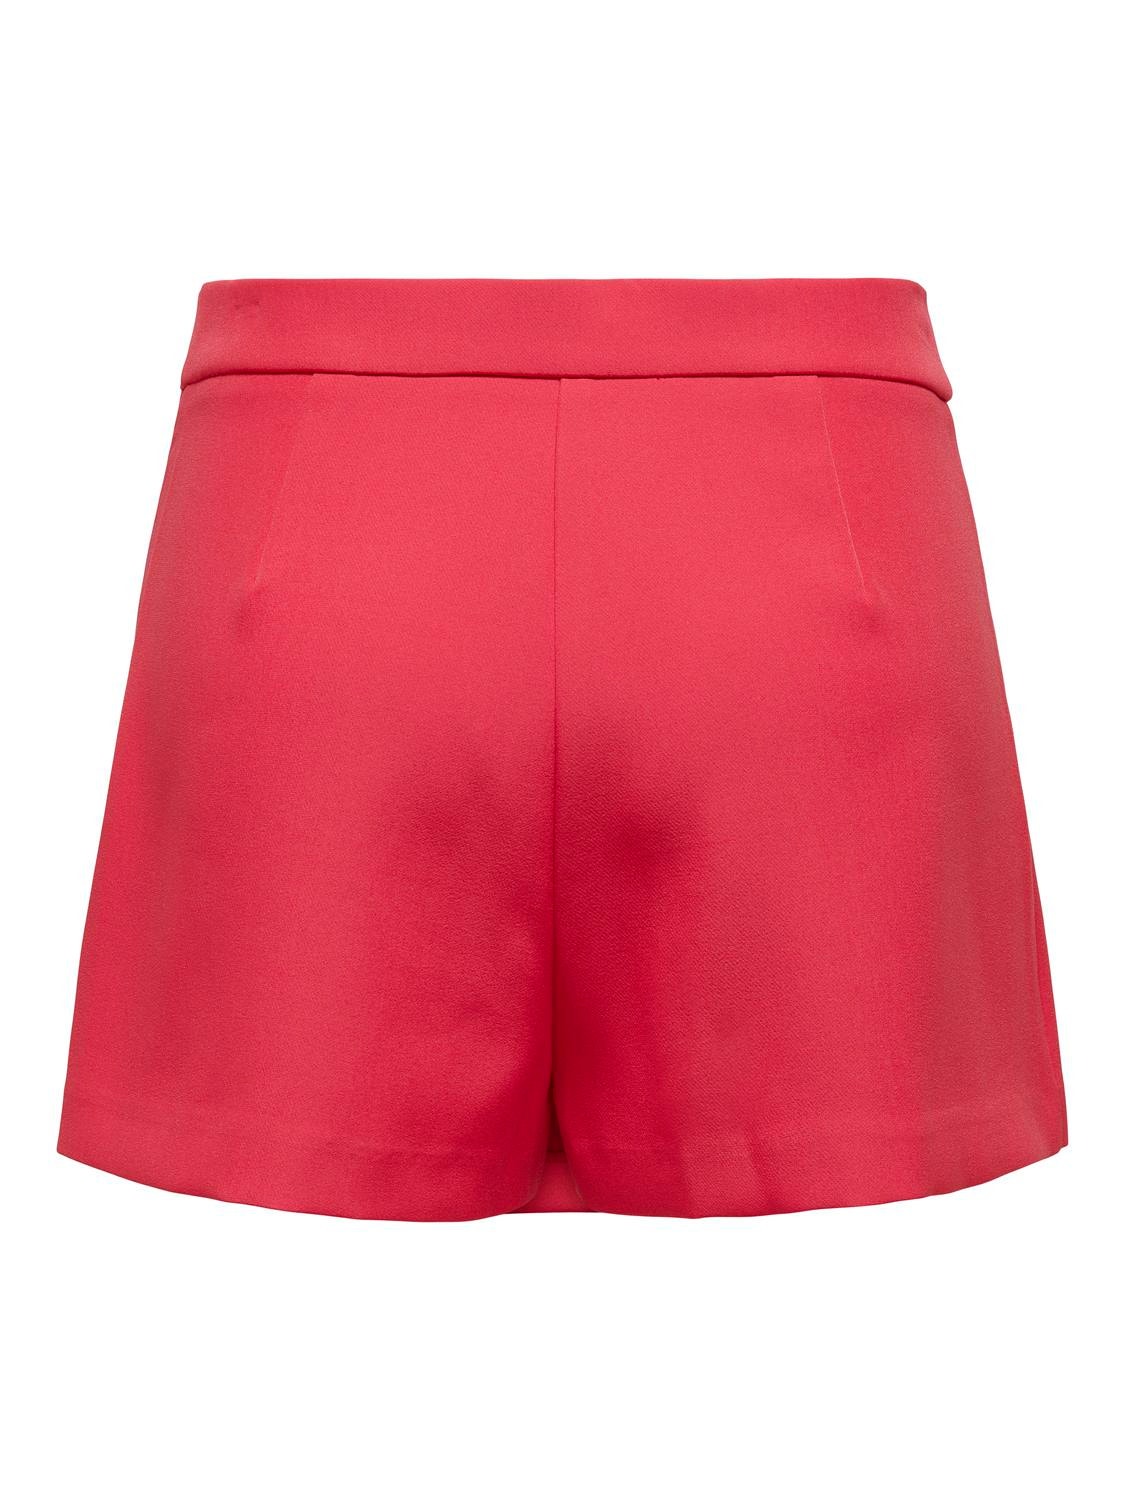 ONLY High waist Short skirt -Teaberry - 15295576